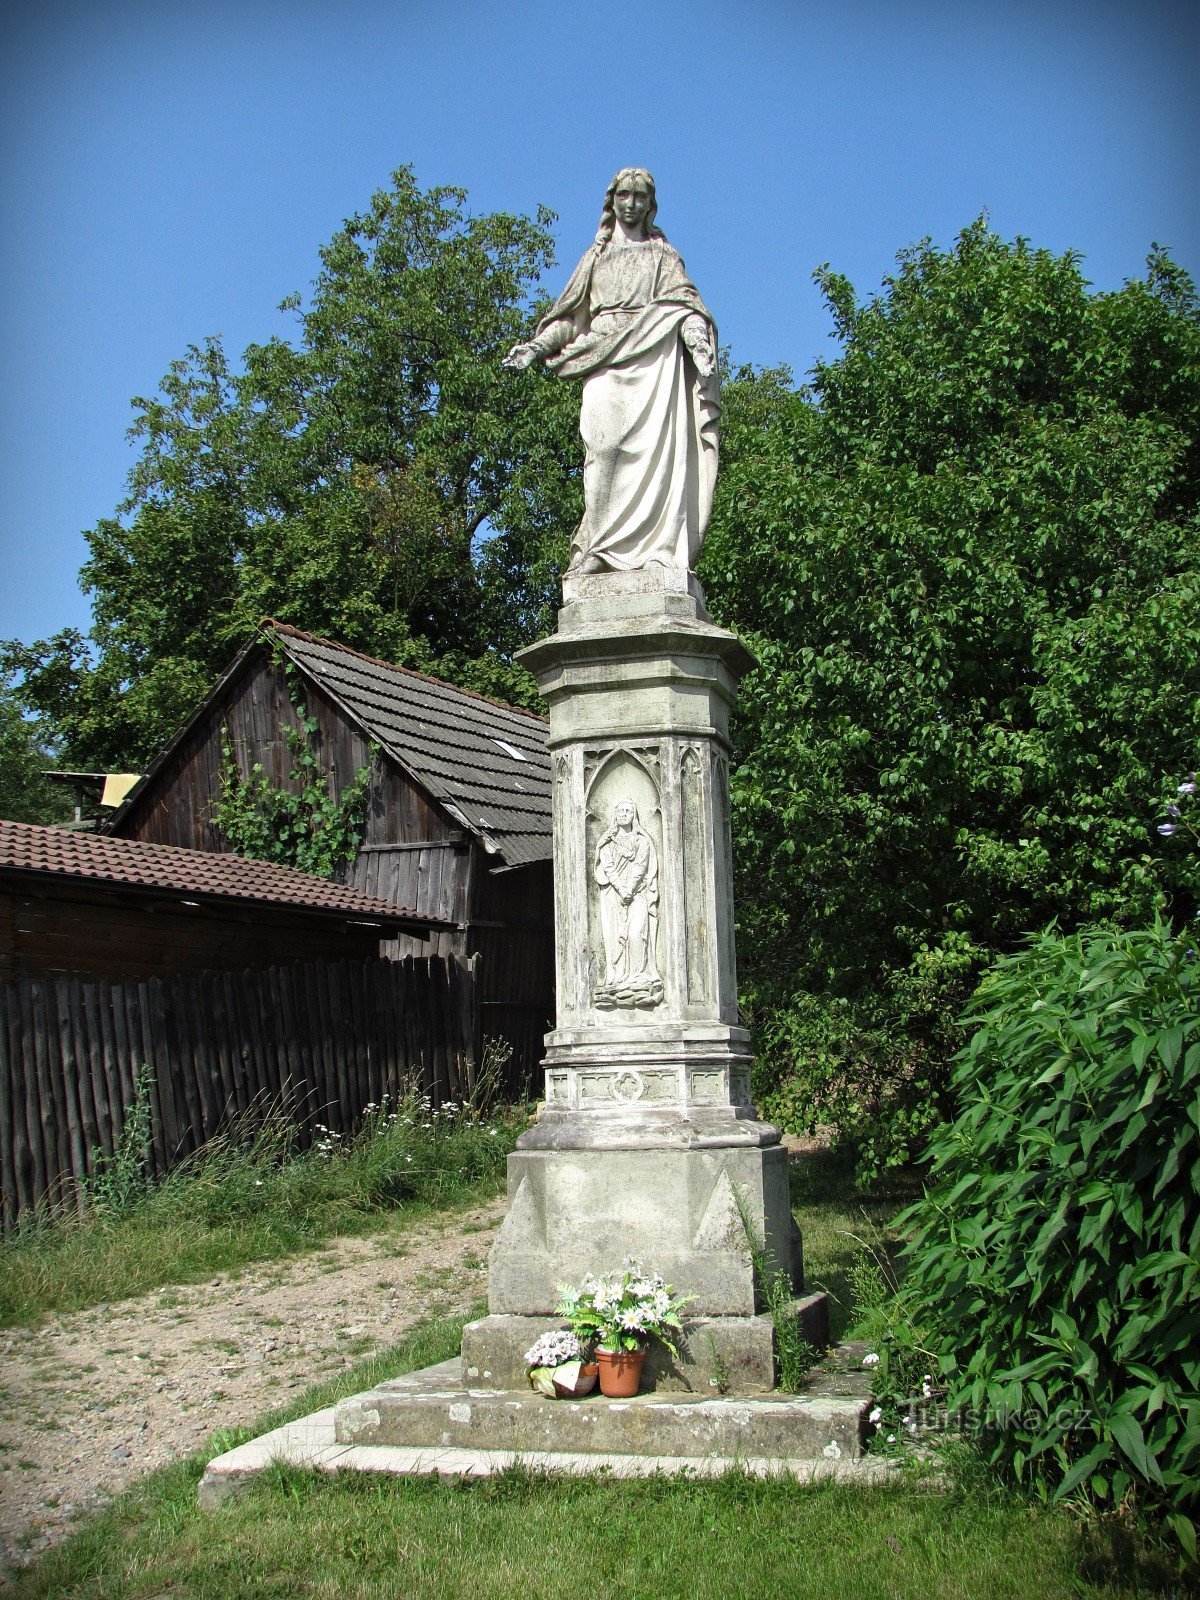 Hostišová - other monuments of the village